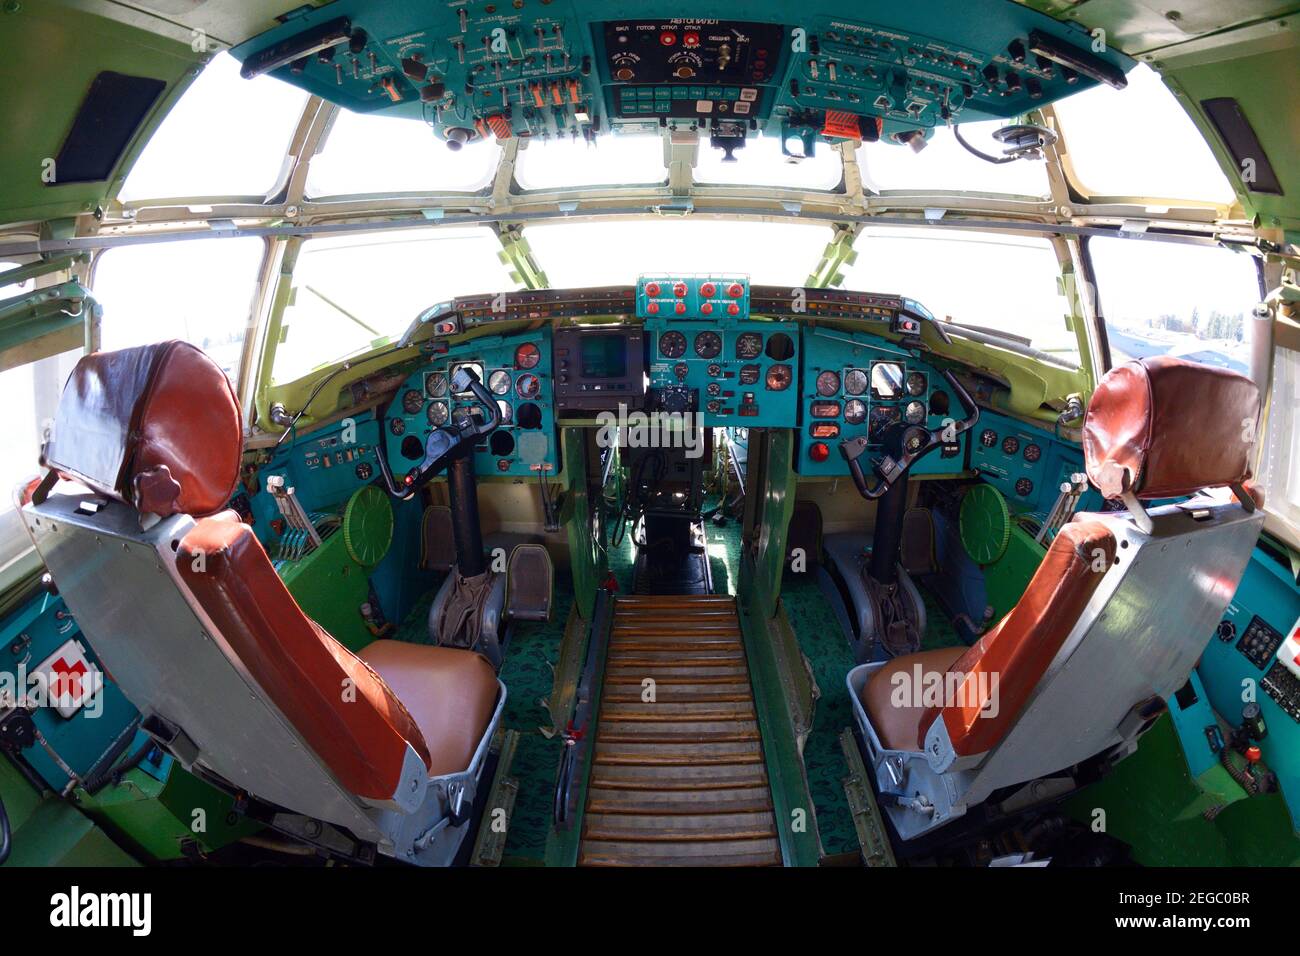 Das Cockpit von Made in Ukraine Transportflugzeug, Lenkrad, Dashboards, zwei Sitze für Piloten. September 16, 2016. Kiew, Ukraine. Stockfoto